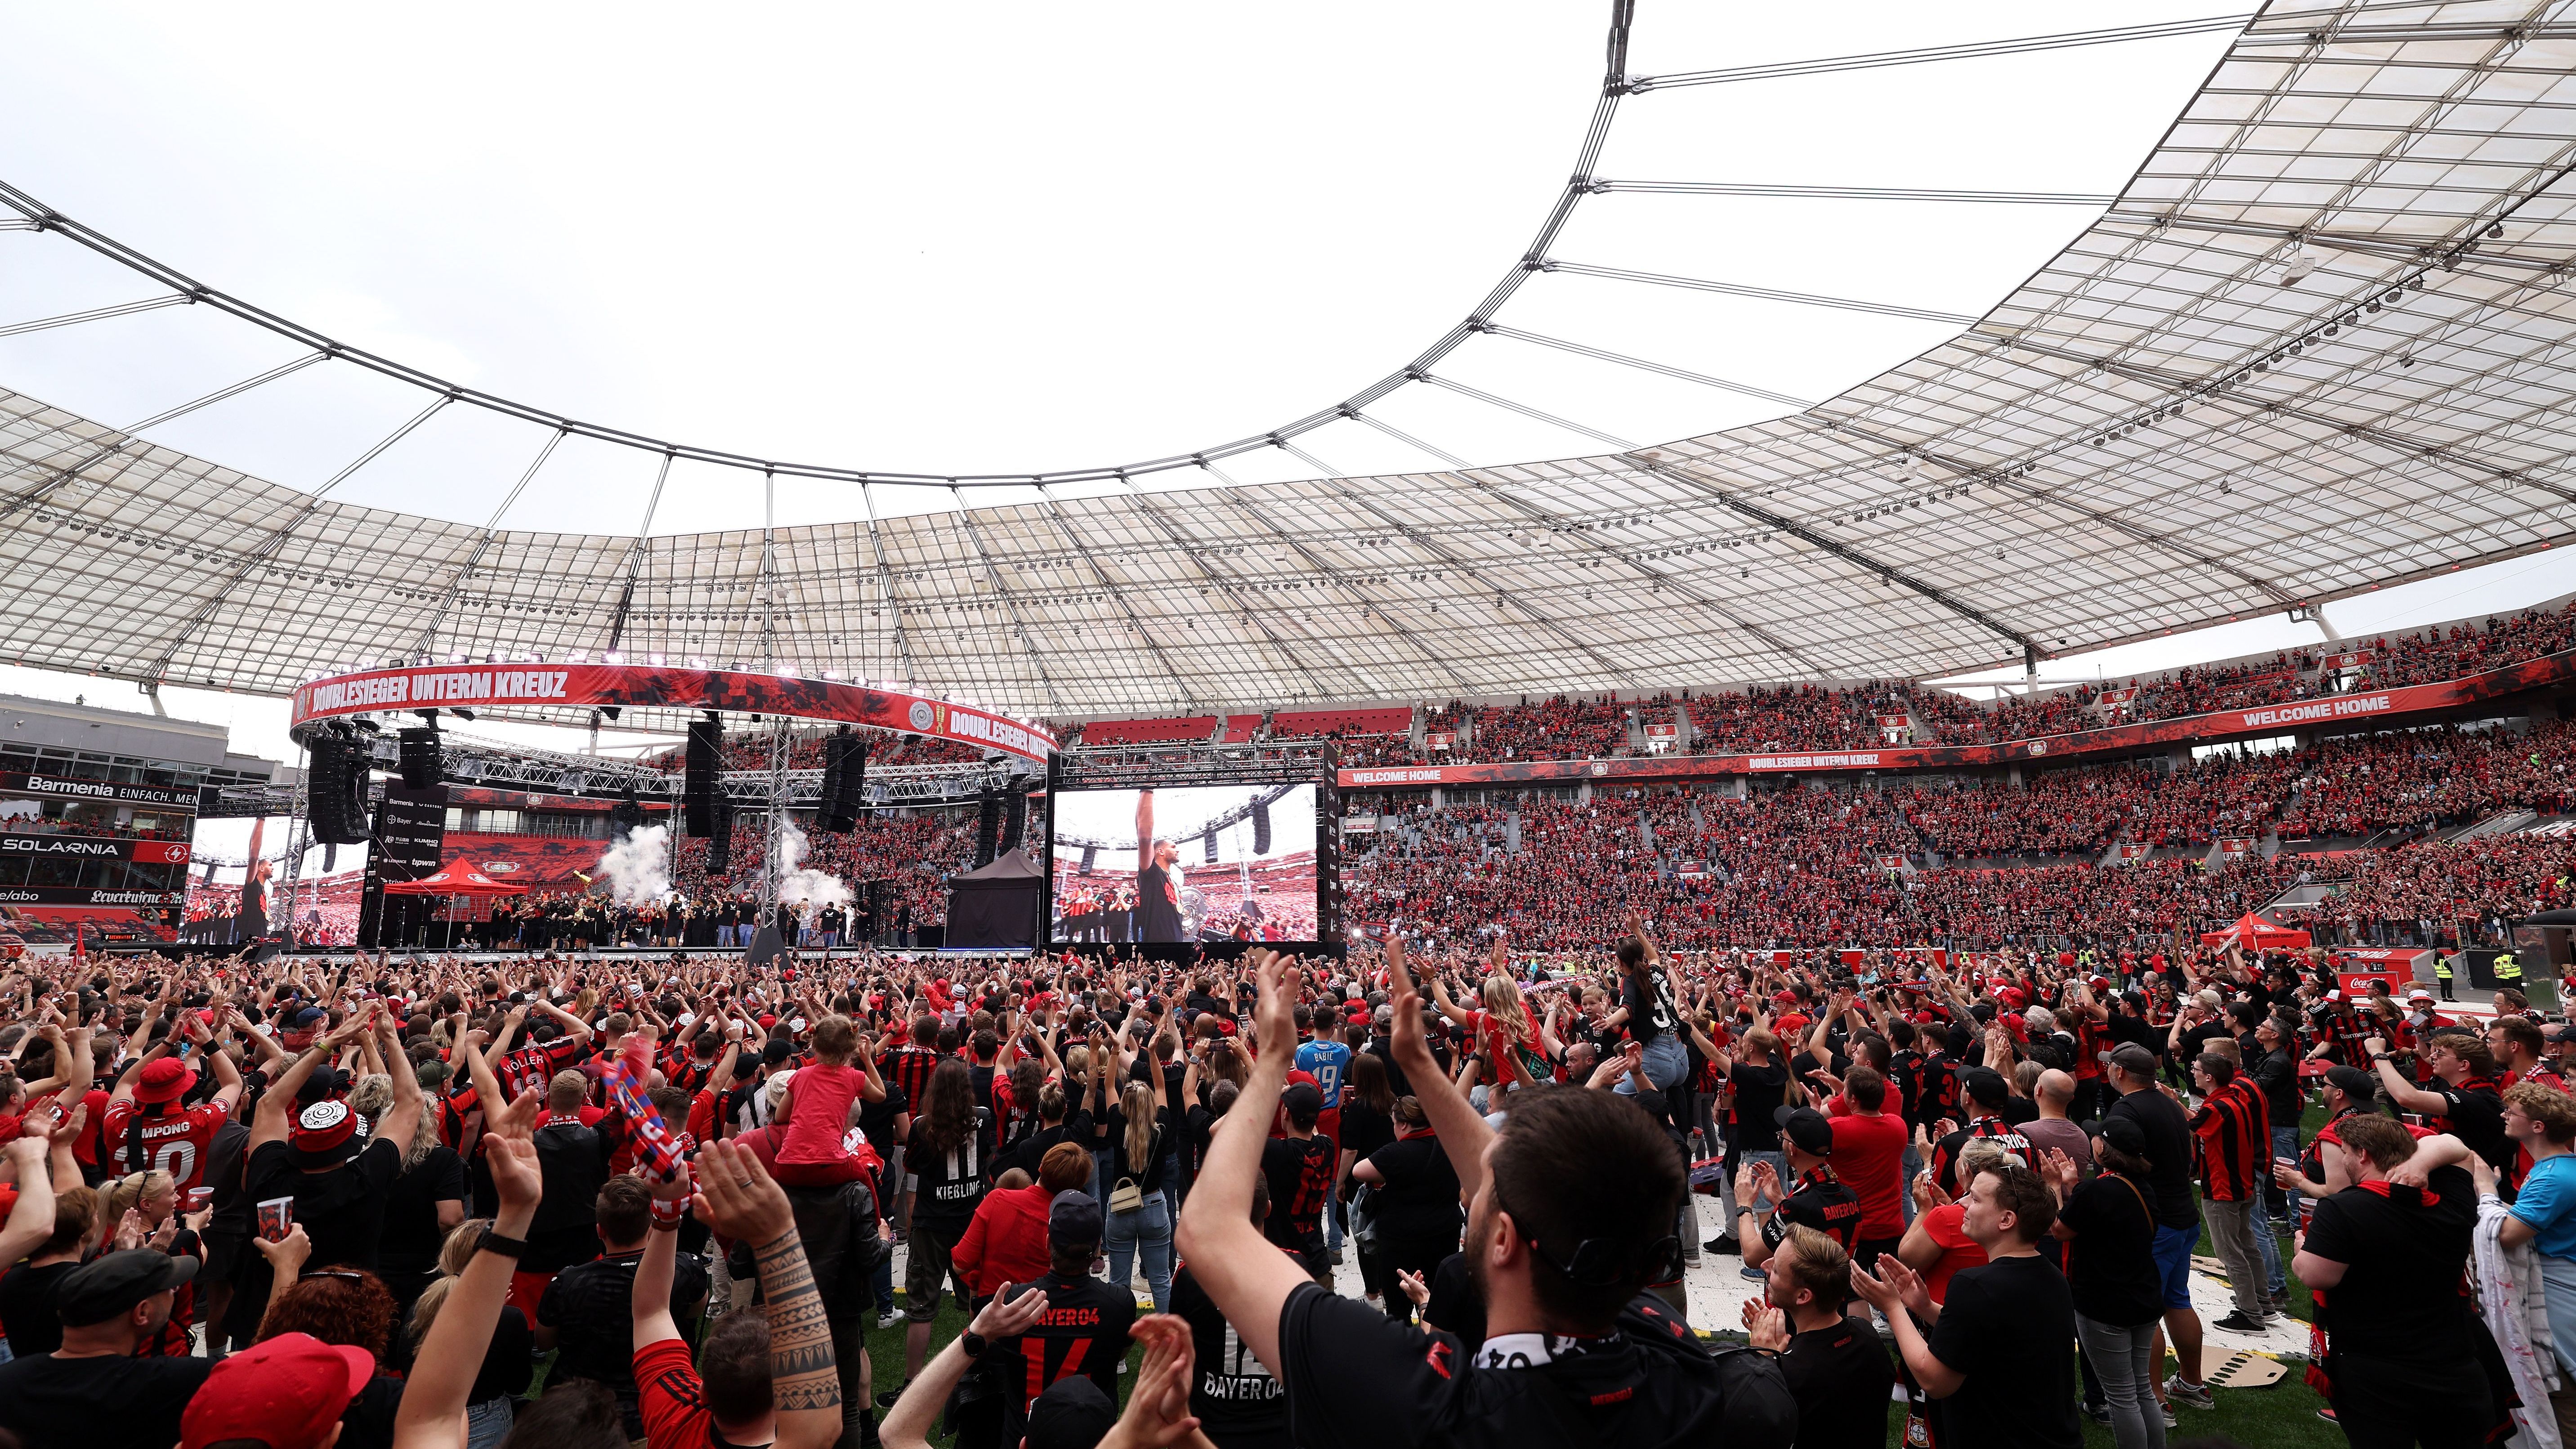 <strong>Bayer Leverkusen feiert den Double-Gewinn</strong><br>Große Bühne für die Leverkusen-Stars! Die Bayer-Anhänger füllten die Tribünen und den Innenraum und feierten ihre Double-Helden vor einer großen Bühne.